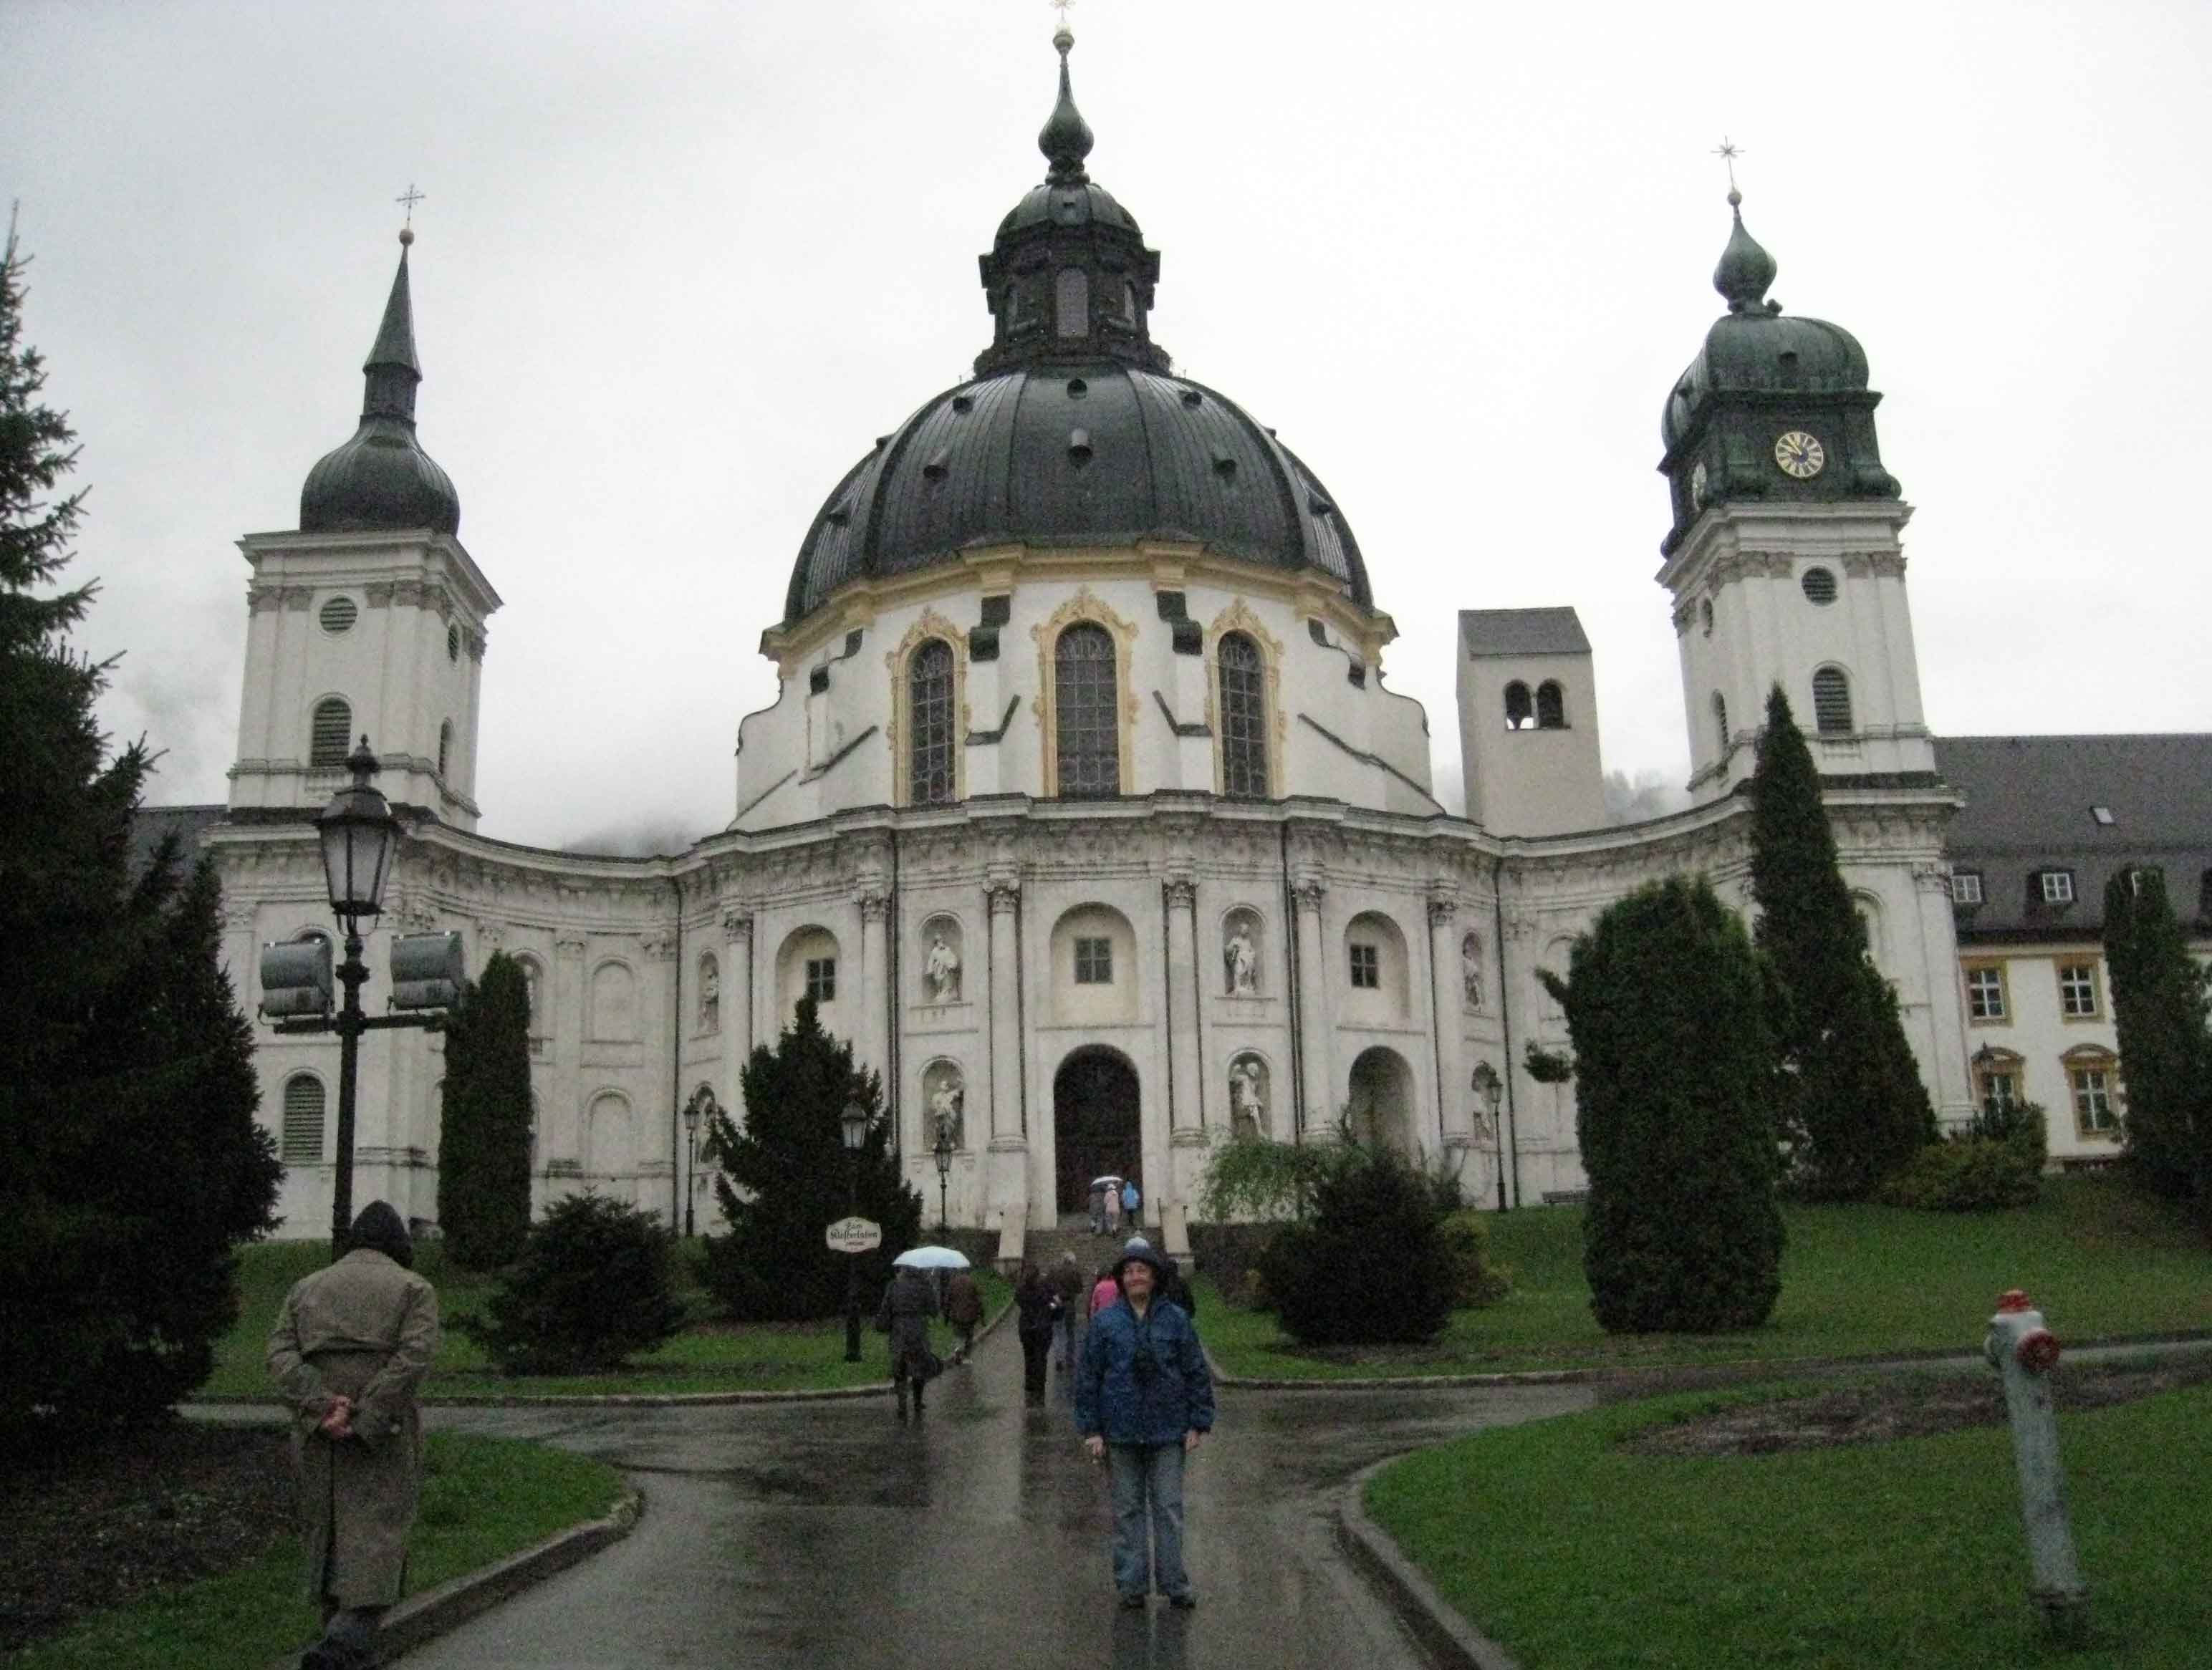 Ettal Basilica